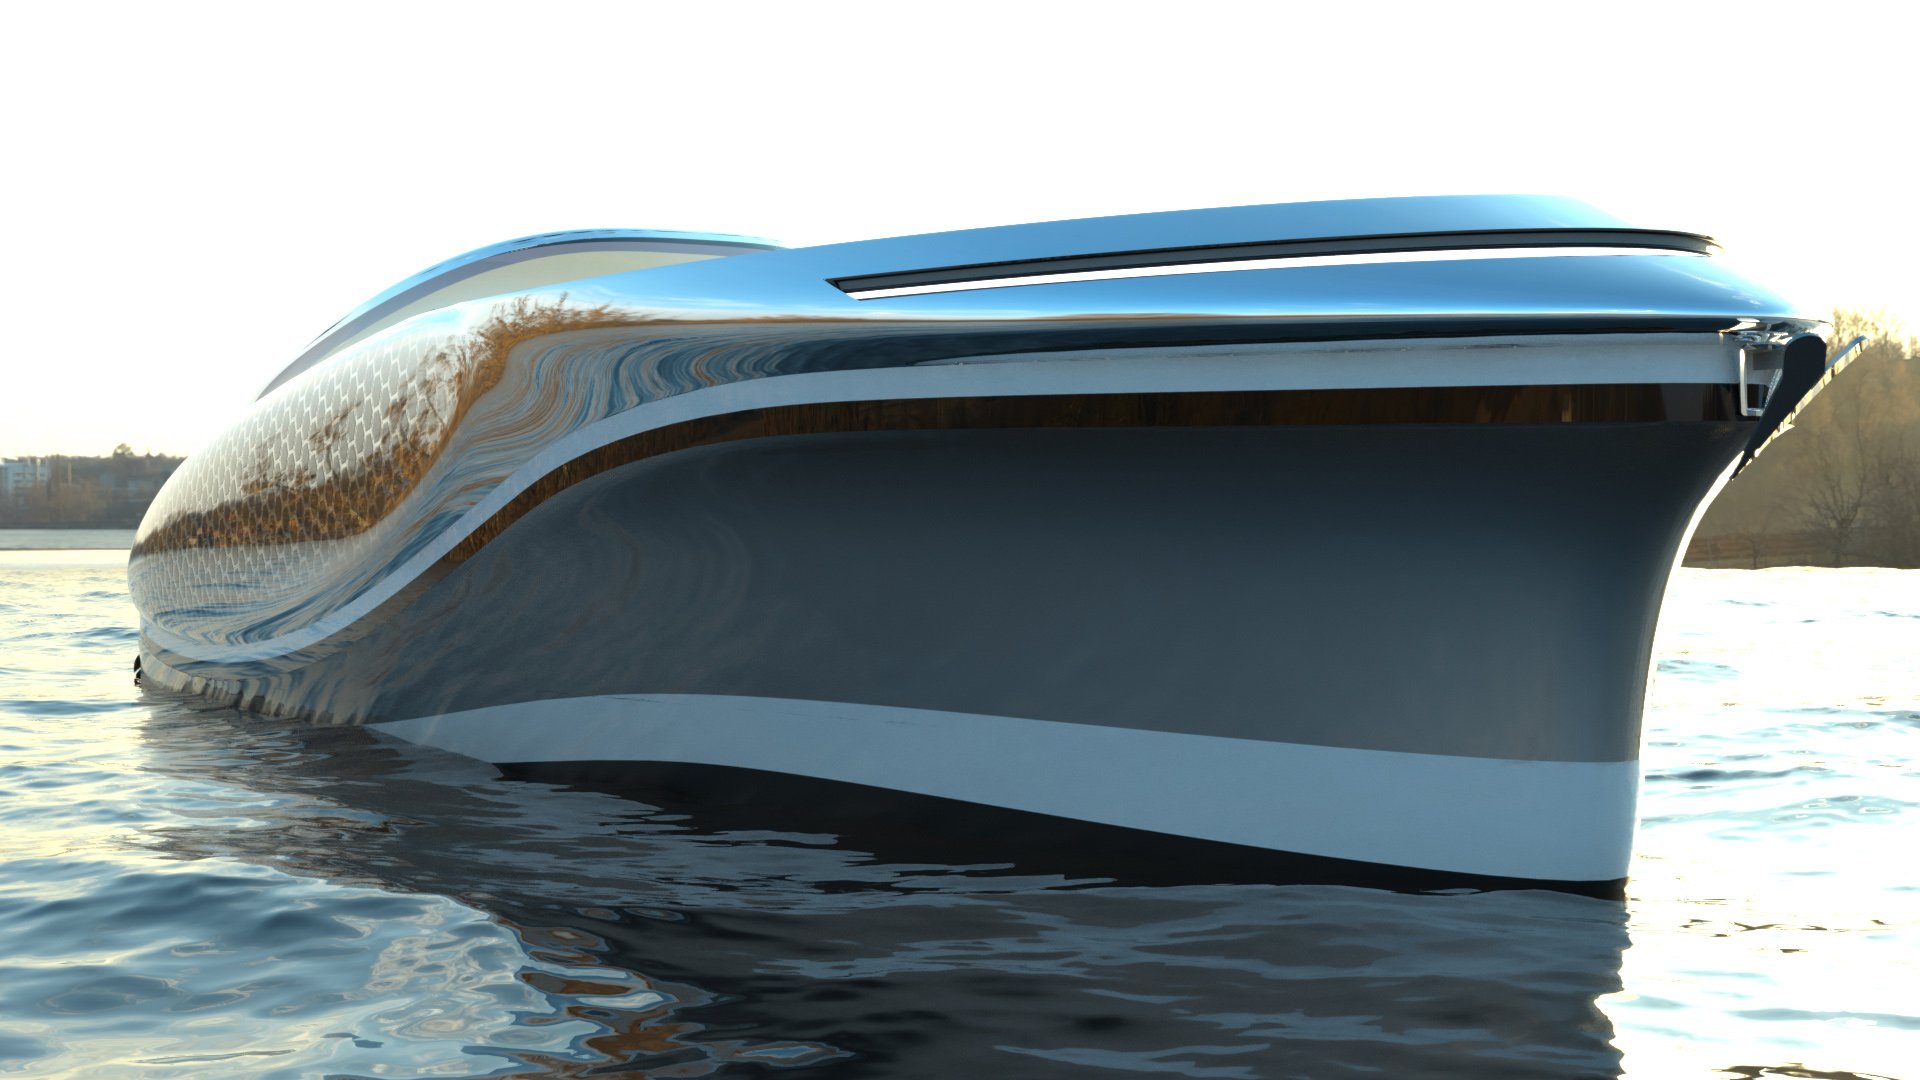 imagen 8 de Embryon Hyperboat Concept, una nueva joya náutica de Lazzarini.